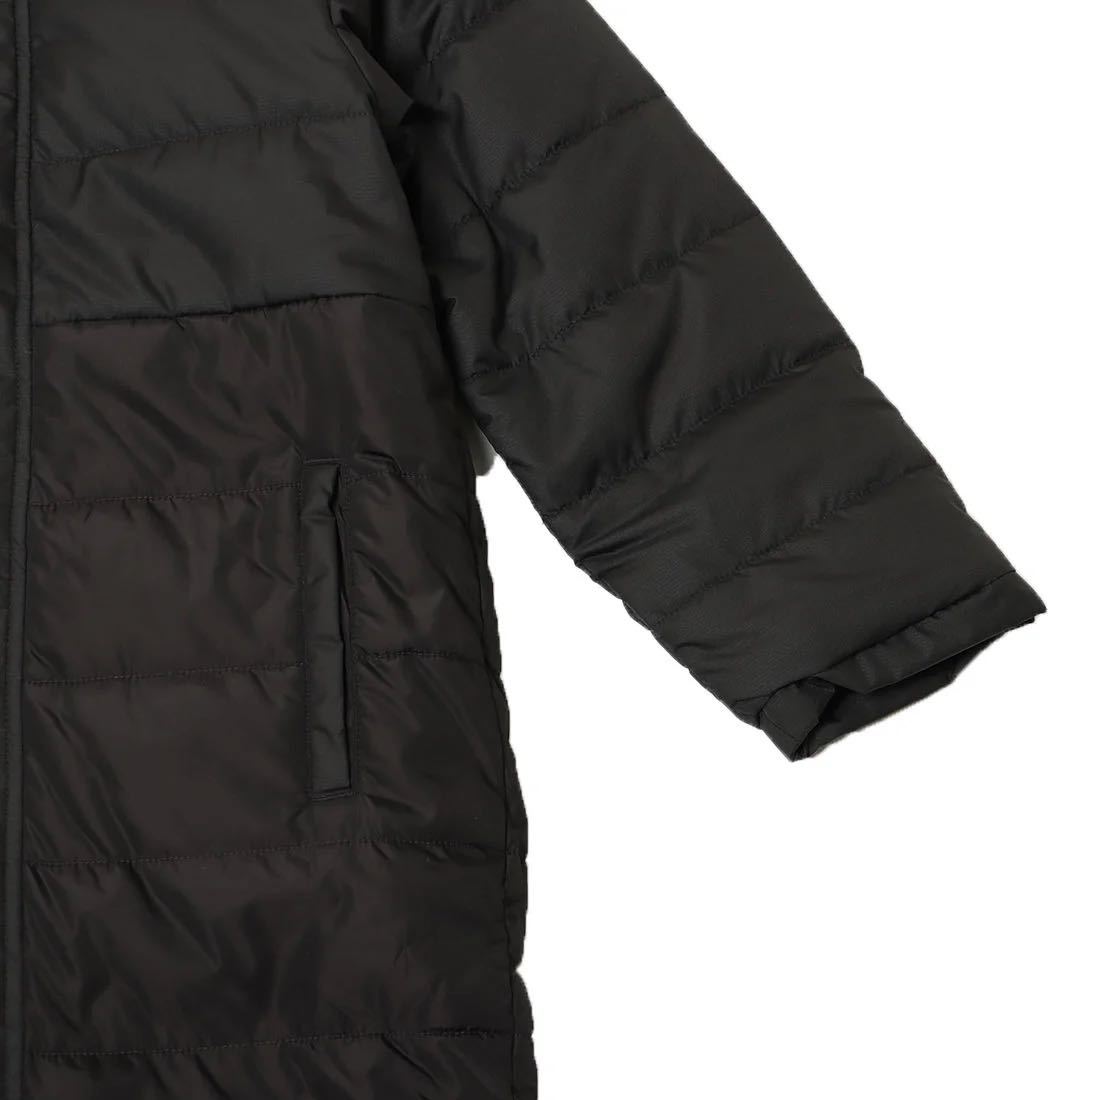  Oacley OAKLEY bench пальто длинное пальто 160 черный Kids Junior ребенок футбол защищающий от холода FOA402904